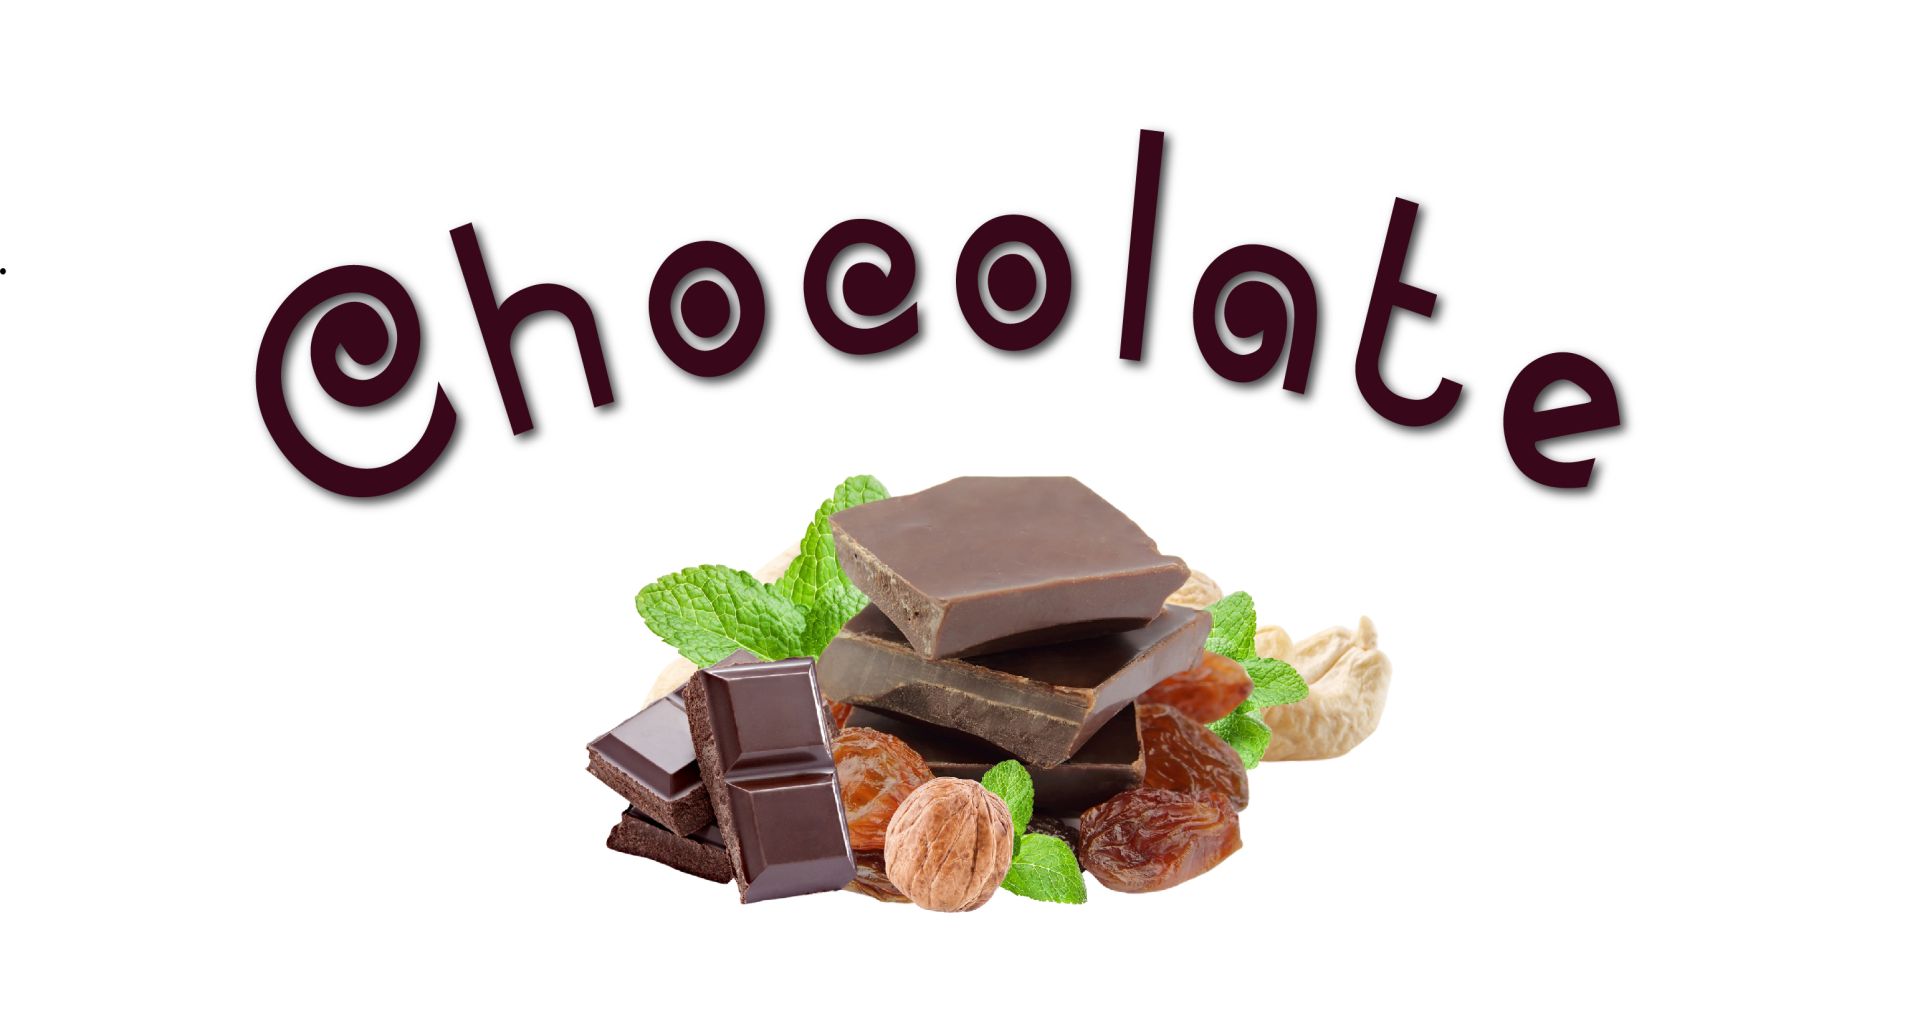 Chocolate có nhiều tác dụng tích cực cho sức khỏe. Chocolate đen cải thiện chức năng nhận thức của não, ngăn ngừa chứng mất trí, giảm tốc độ sản xuất của hormone căng thẳng. Vì thế, lời khuyên dành cho bạn khi căng thẳng là hãy ăn một ít chocolate, loại càng đậm màu càng tốt. Hãy thưởng thức hương vị ngọt đắng của chocolate đen, bạn sẽ cảm thấy sảng khoái hơn. Thành phần anandamine có trong chocolate có thể làm tăng mức dopamine (chất cho chúng ta cảm giác thỏa mãn) trong não bộ của bạn, do đó đảm bảo tâm trí bạn thoải mái và đánh bay căng thẳng.